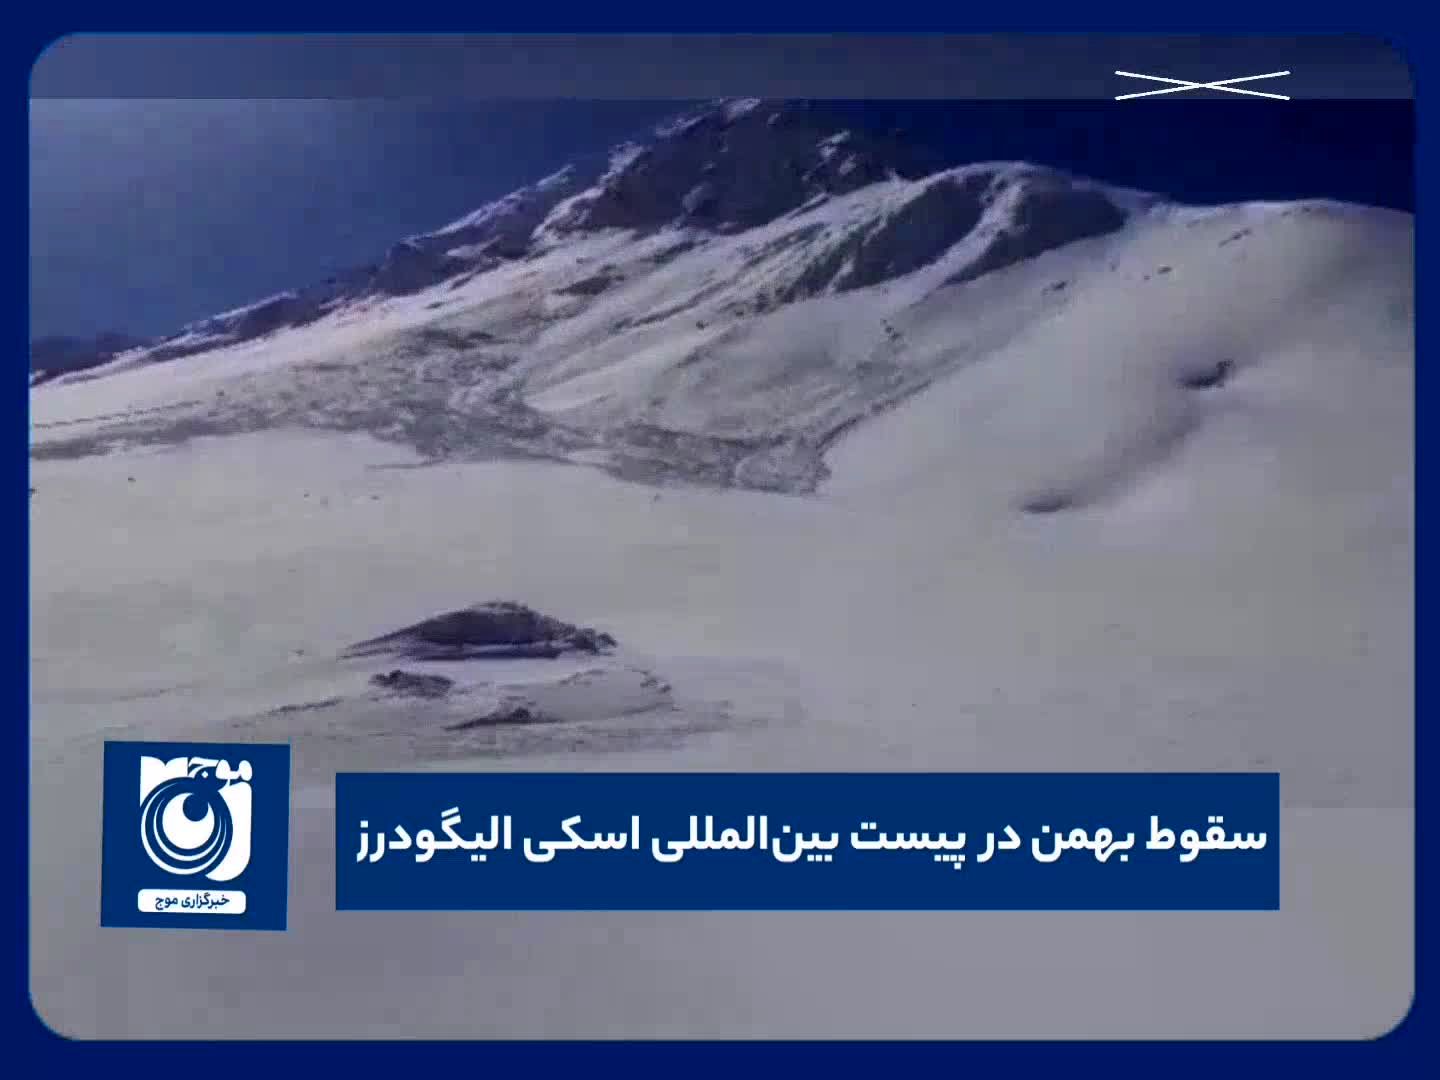 سقوط بهمن در پیست بین المللی اسکی الیگودرز